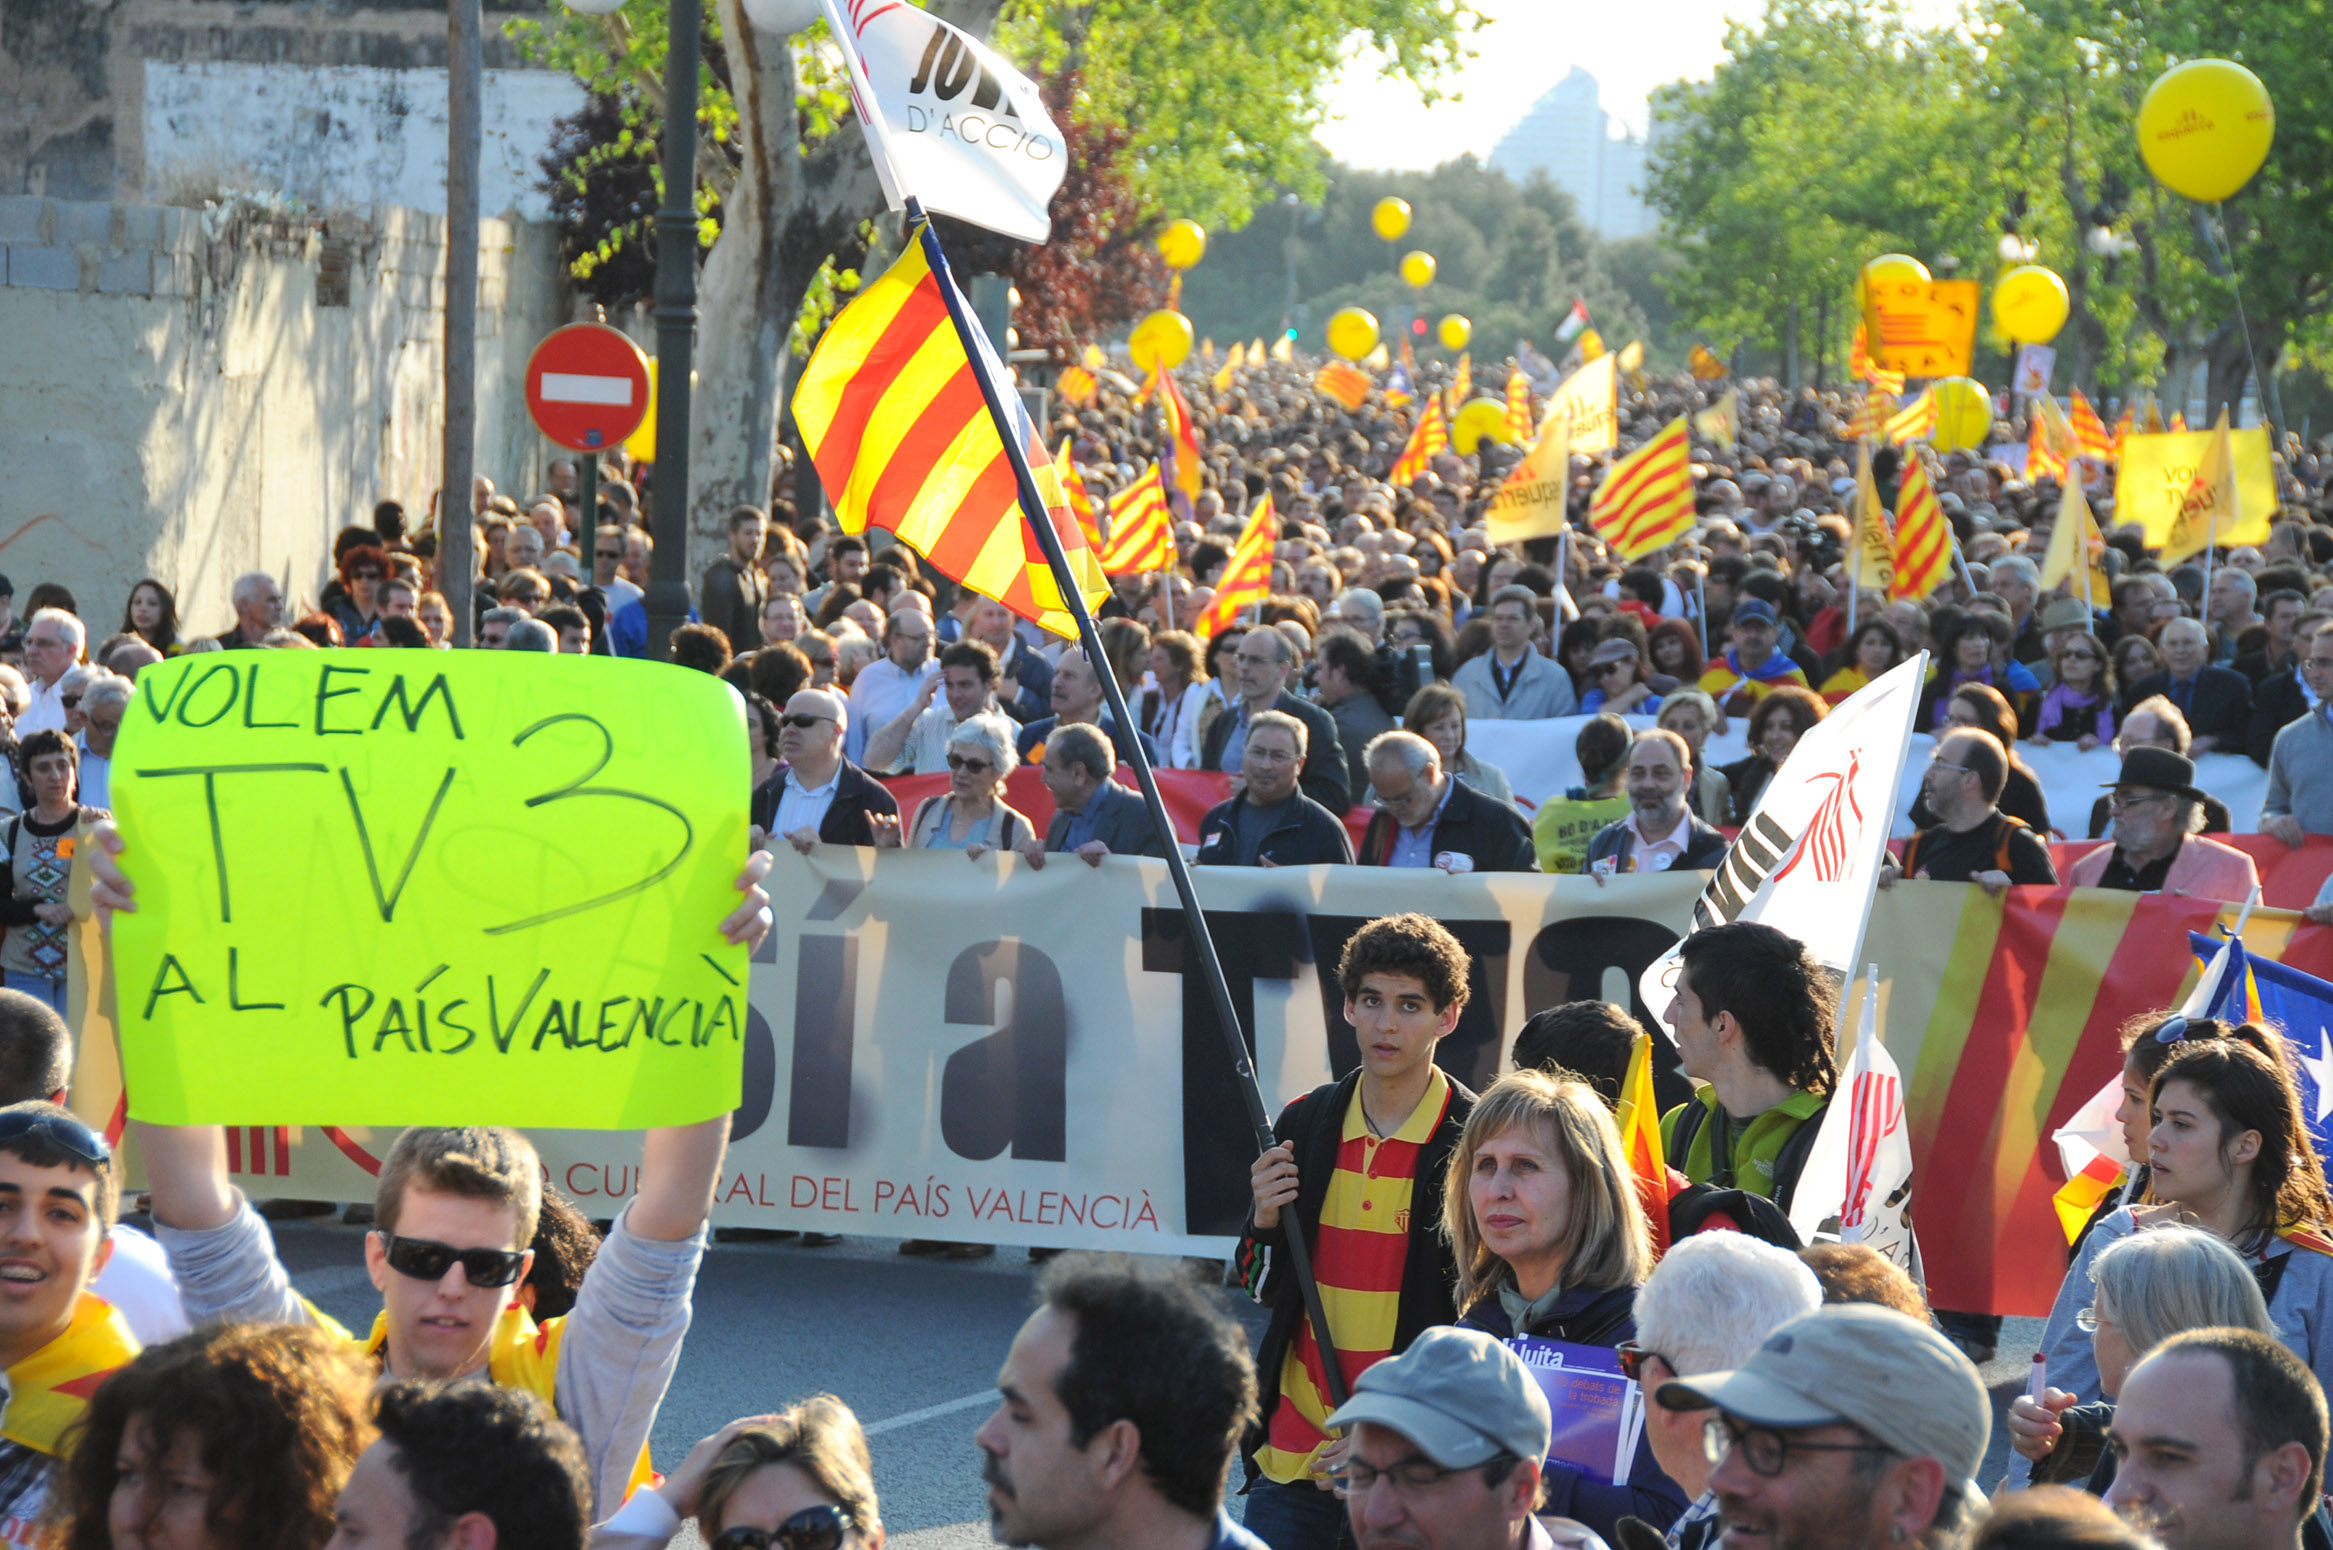 Manifestació del 25 d'Abril del 2011 a València (fotografia: Prats i Camps).